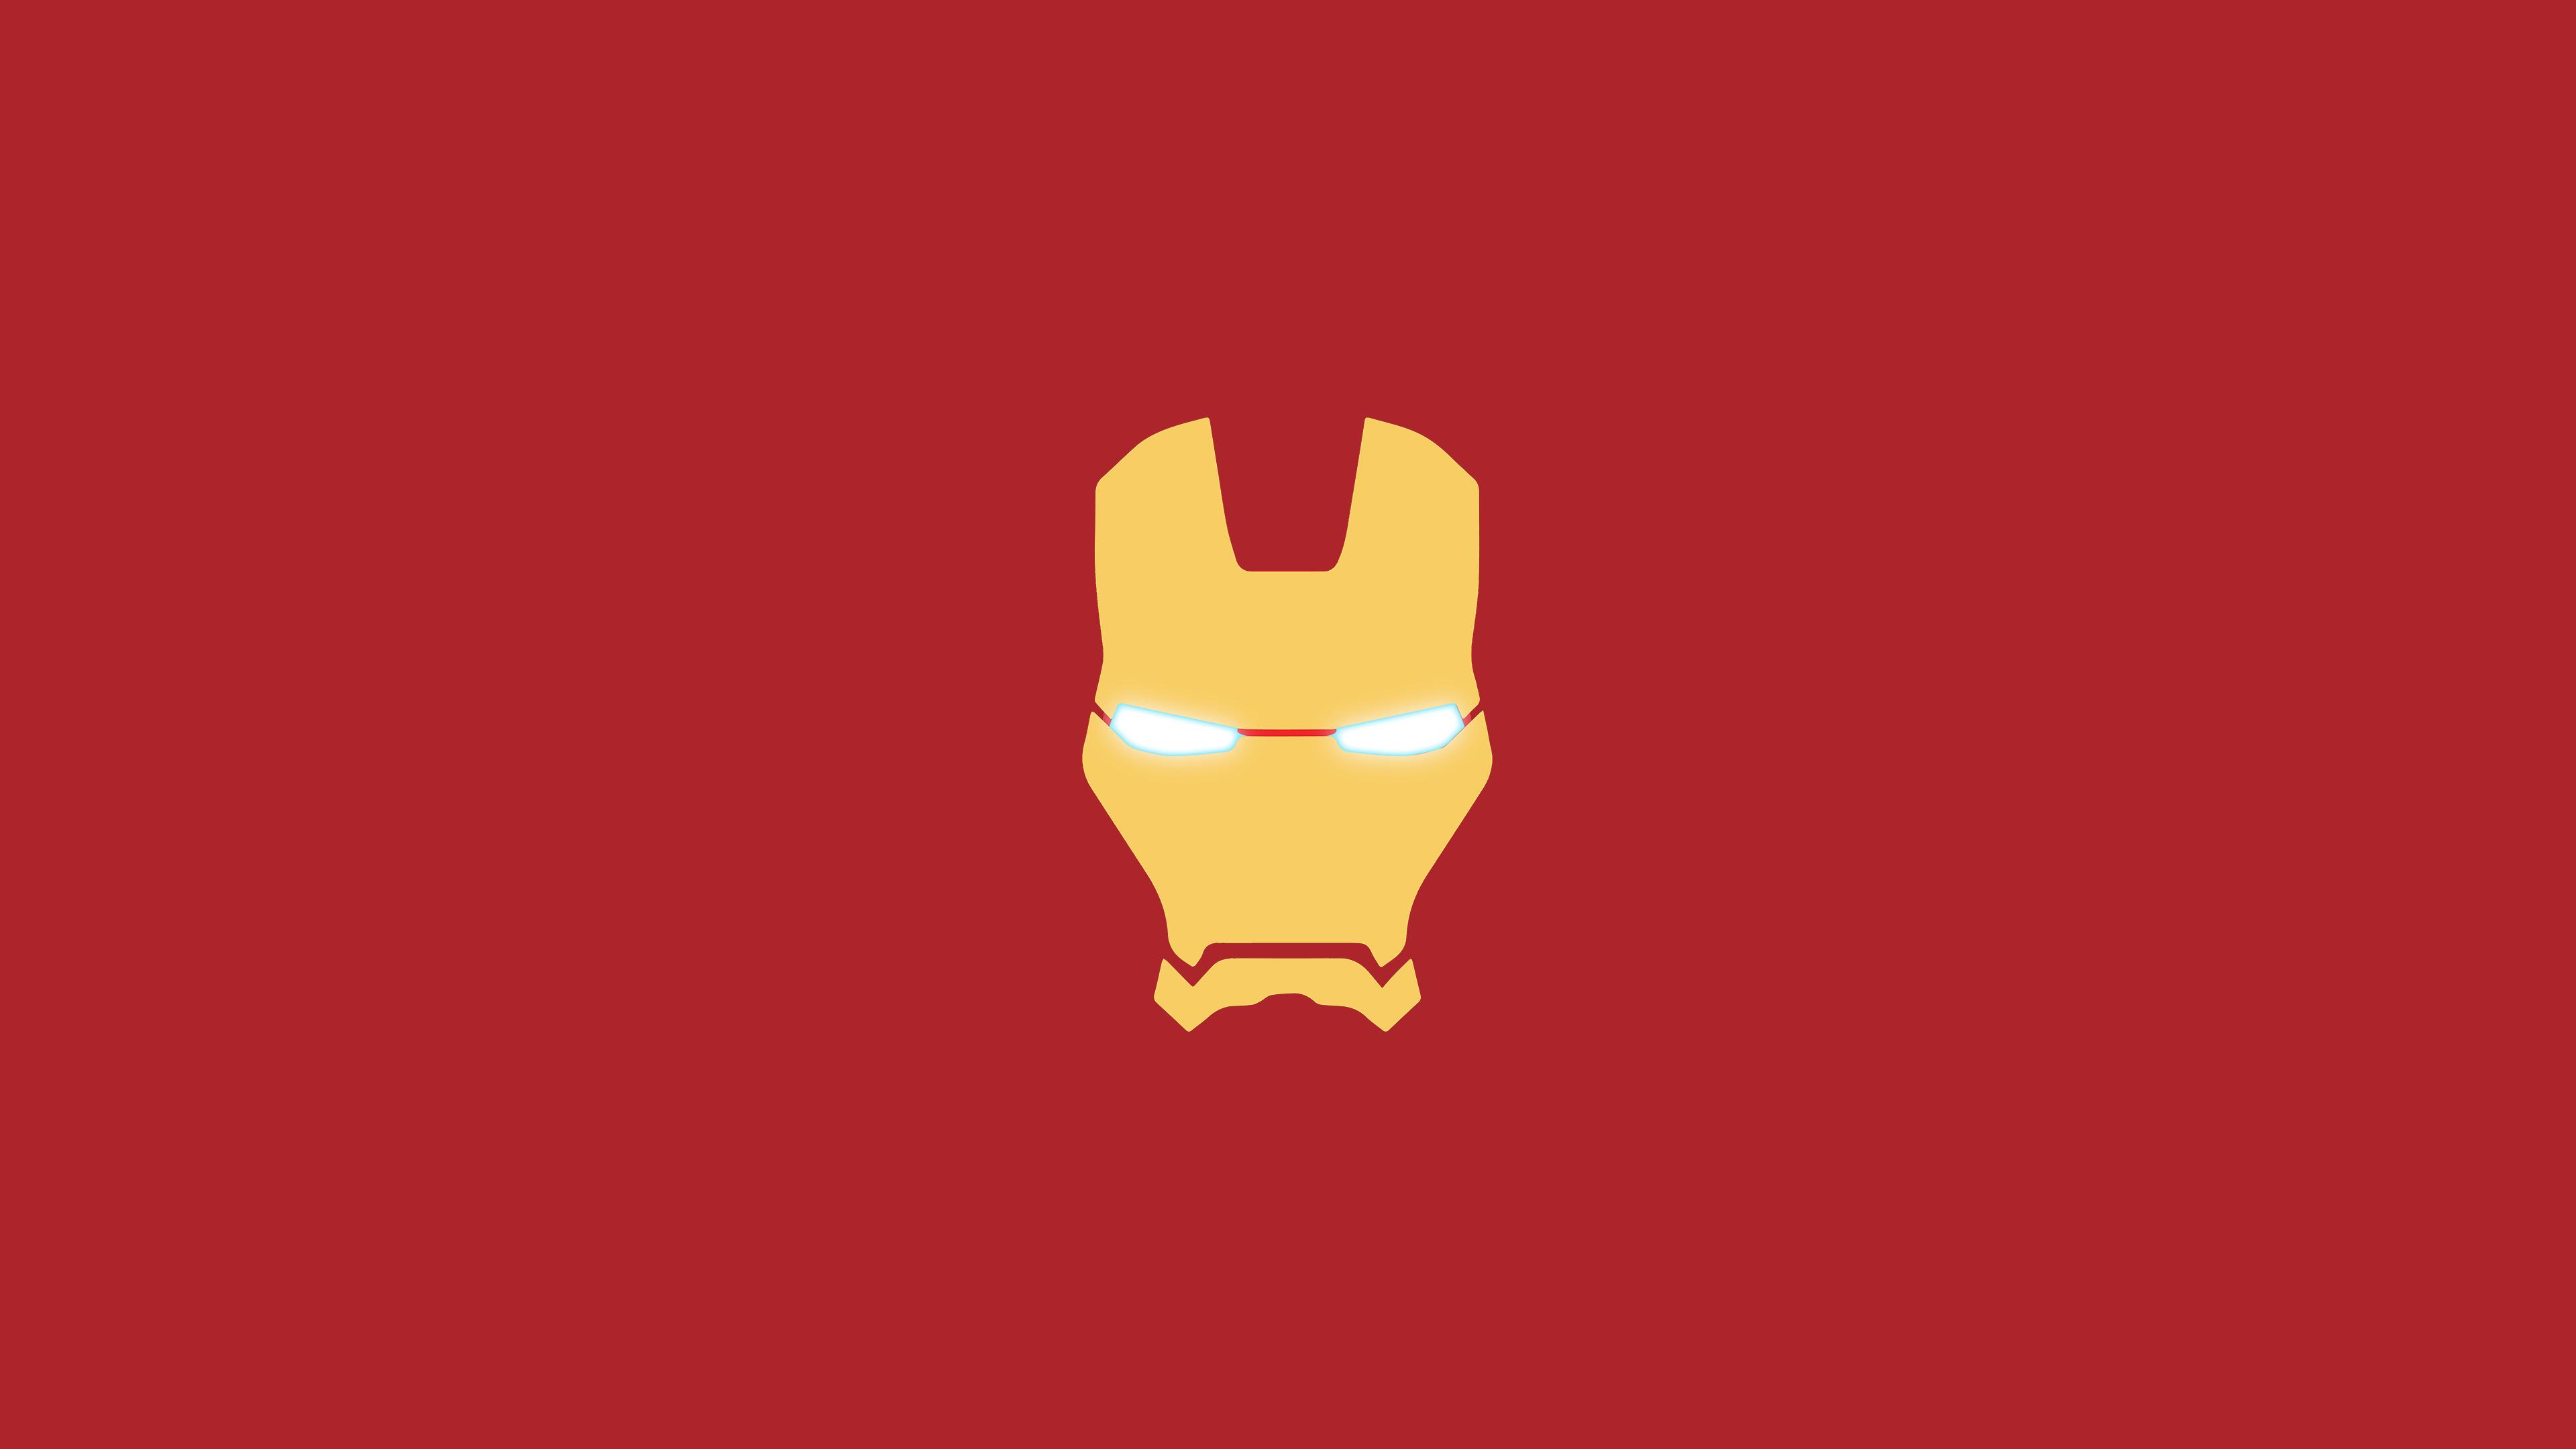 Iron Man Mask Minimal, HD Logo, 4k Wallpaper, Image, Background